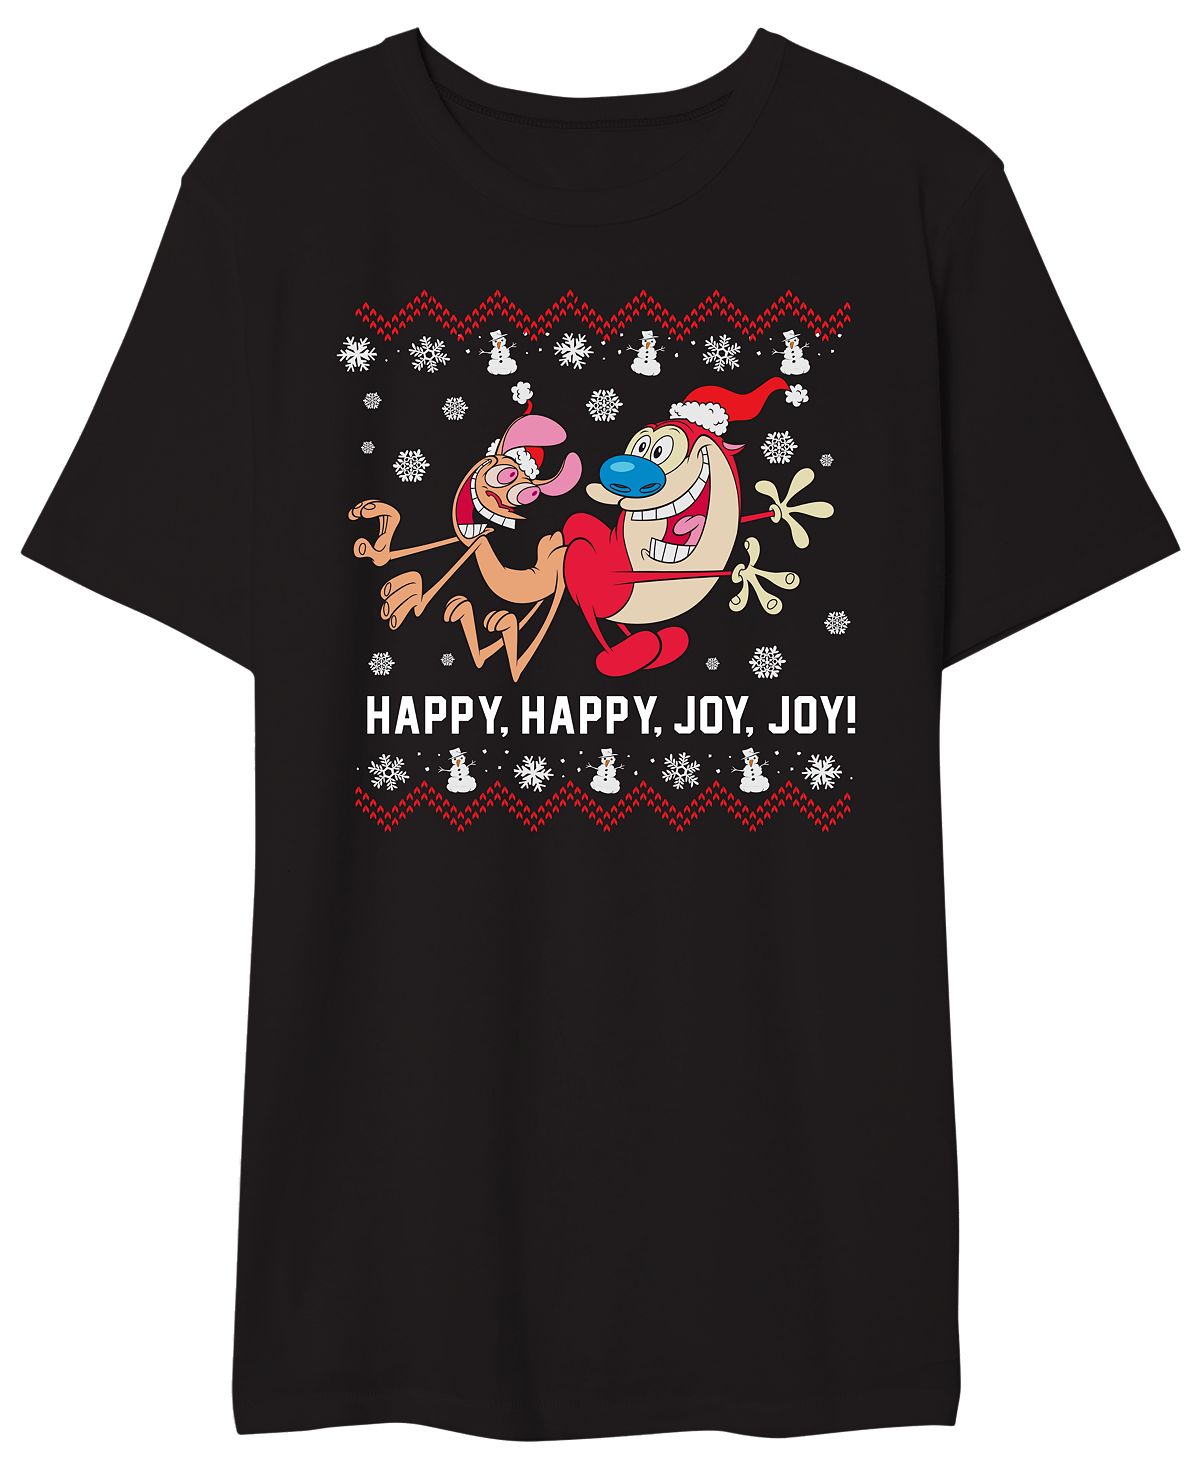 Мужская футболка с графическим рисунком happy happy joy joy AIRWAVES, мульти conair sophia joy чехол для шлейфа на двойной молнии с цветочным рисунком 1 предмет